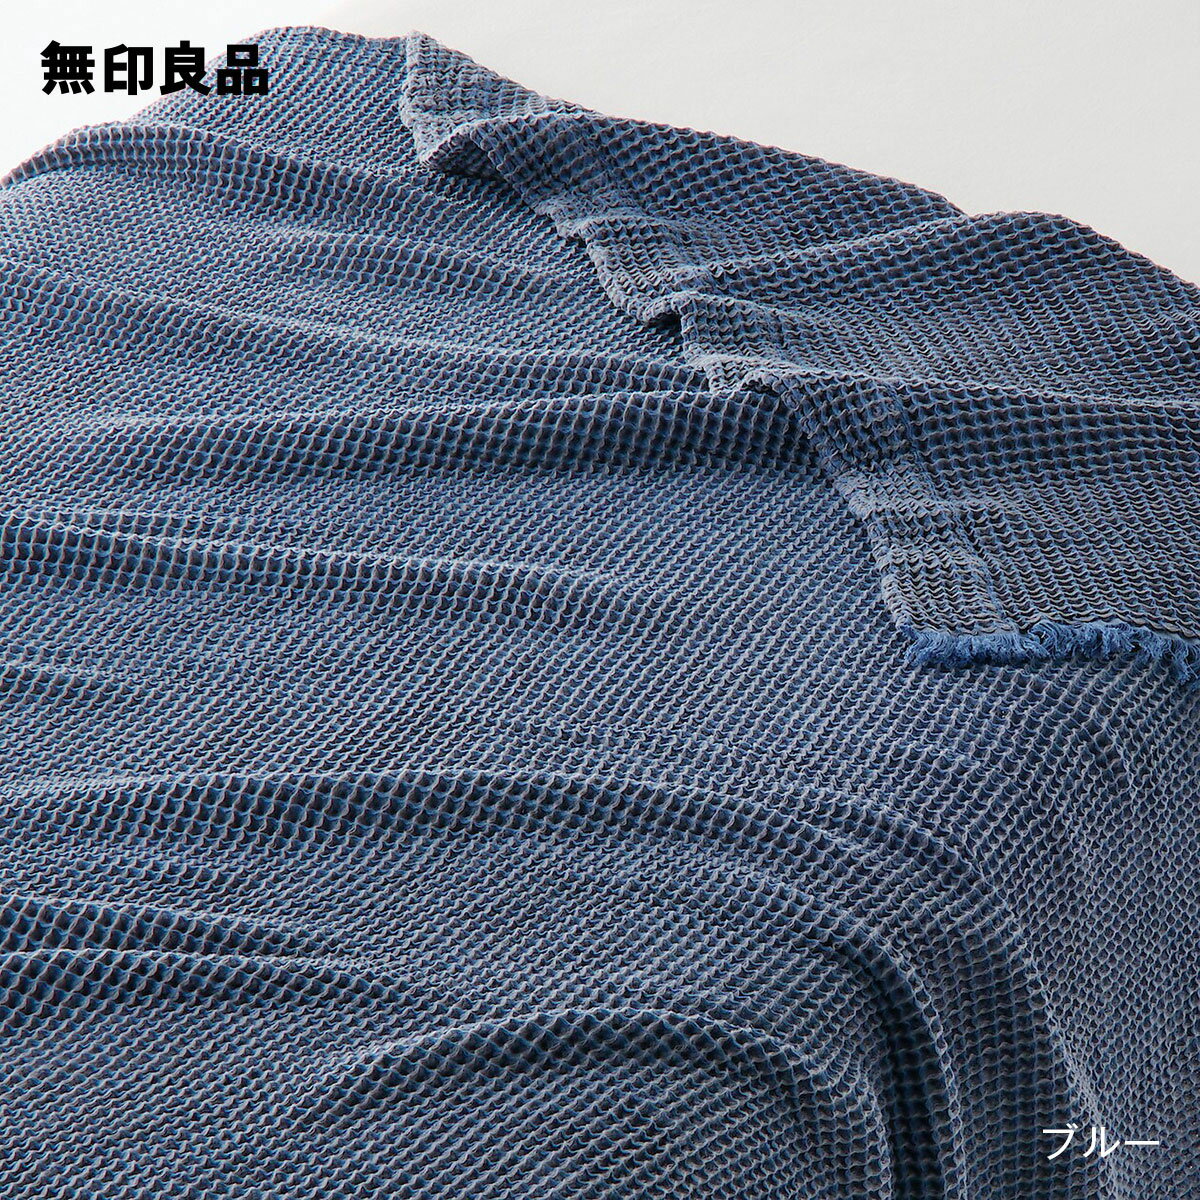 【無印良品 公式】【ダブル】ワッフル織ケット・180 200cm